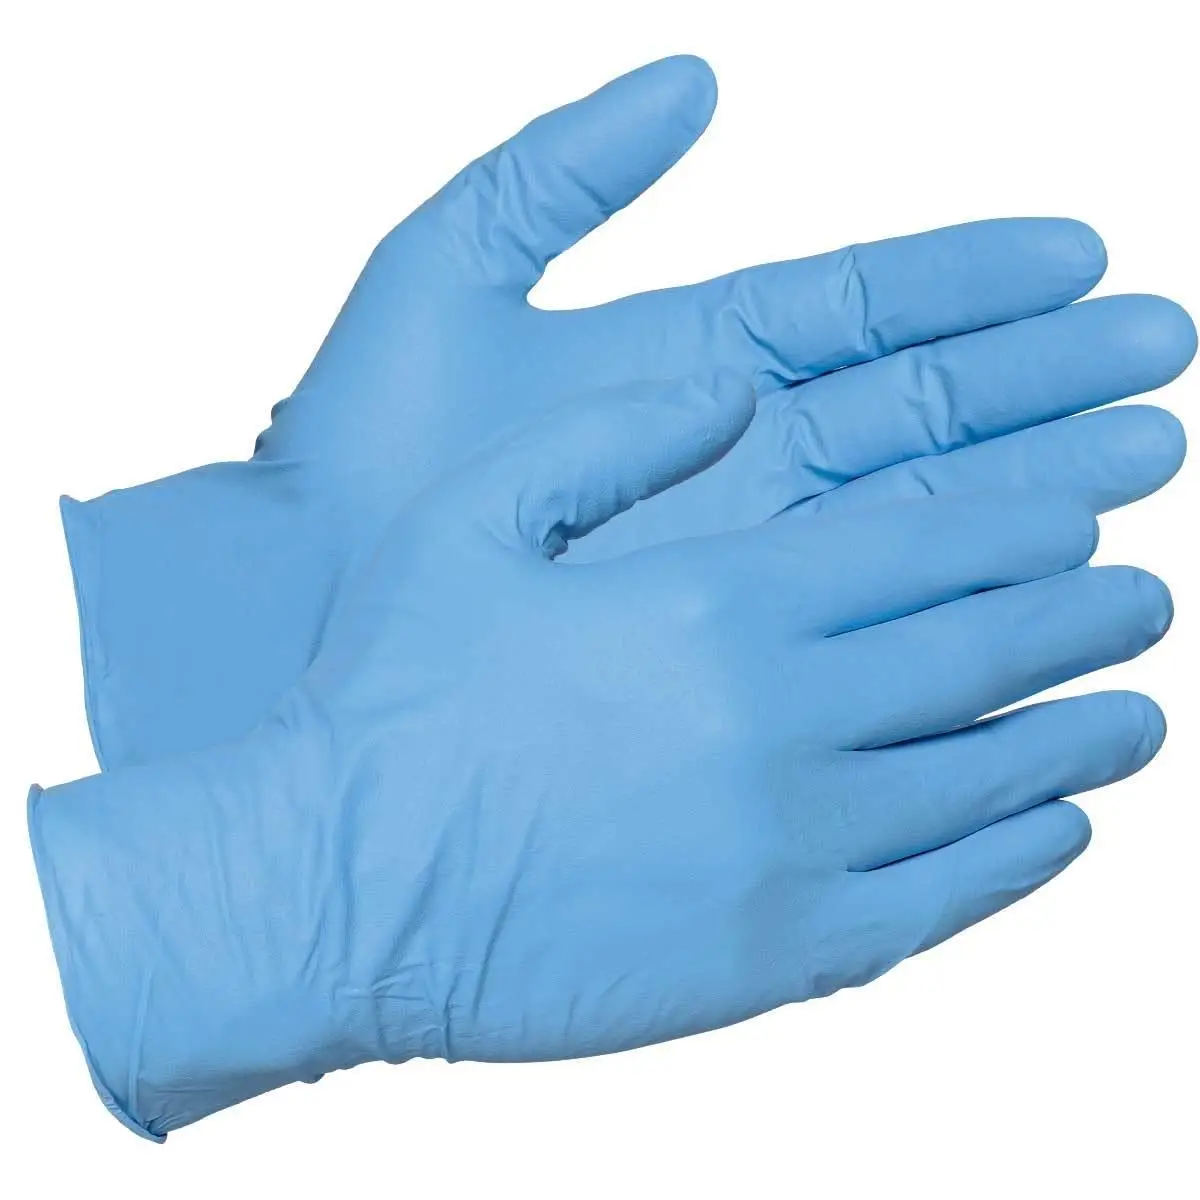 Las enfermeras guantes de nitrilo para examen rectal